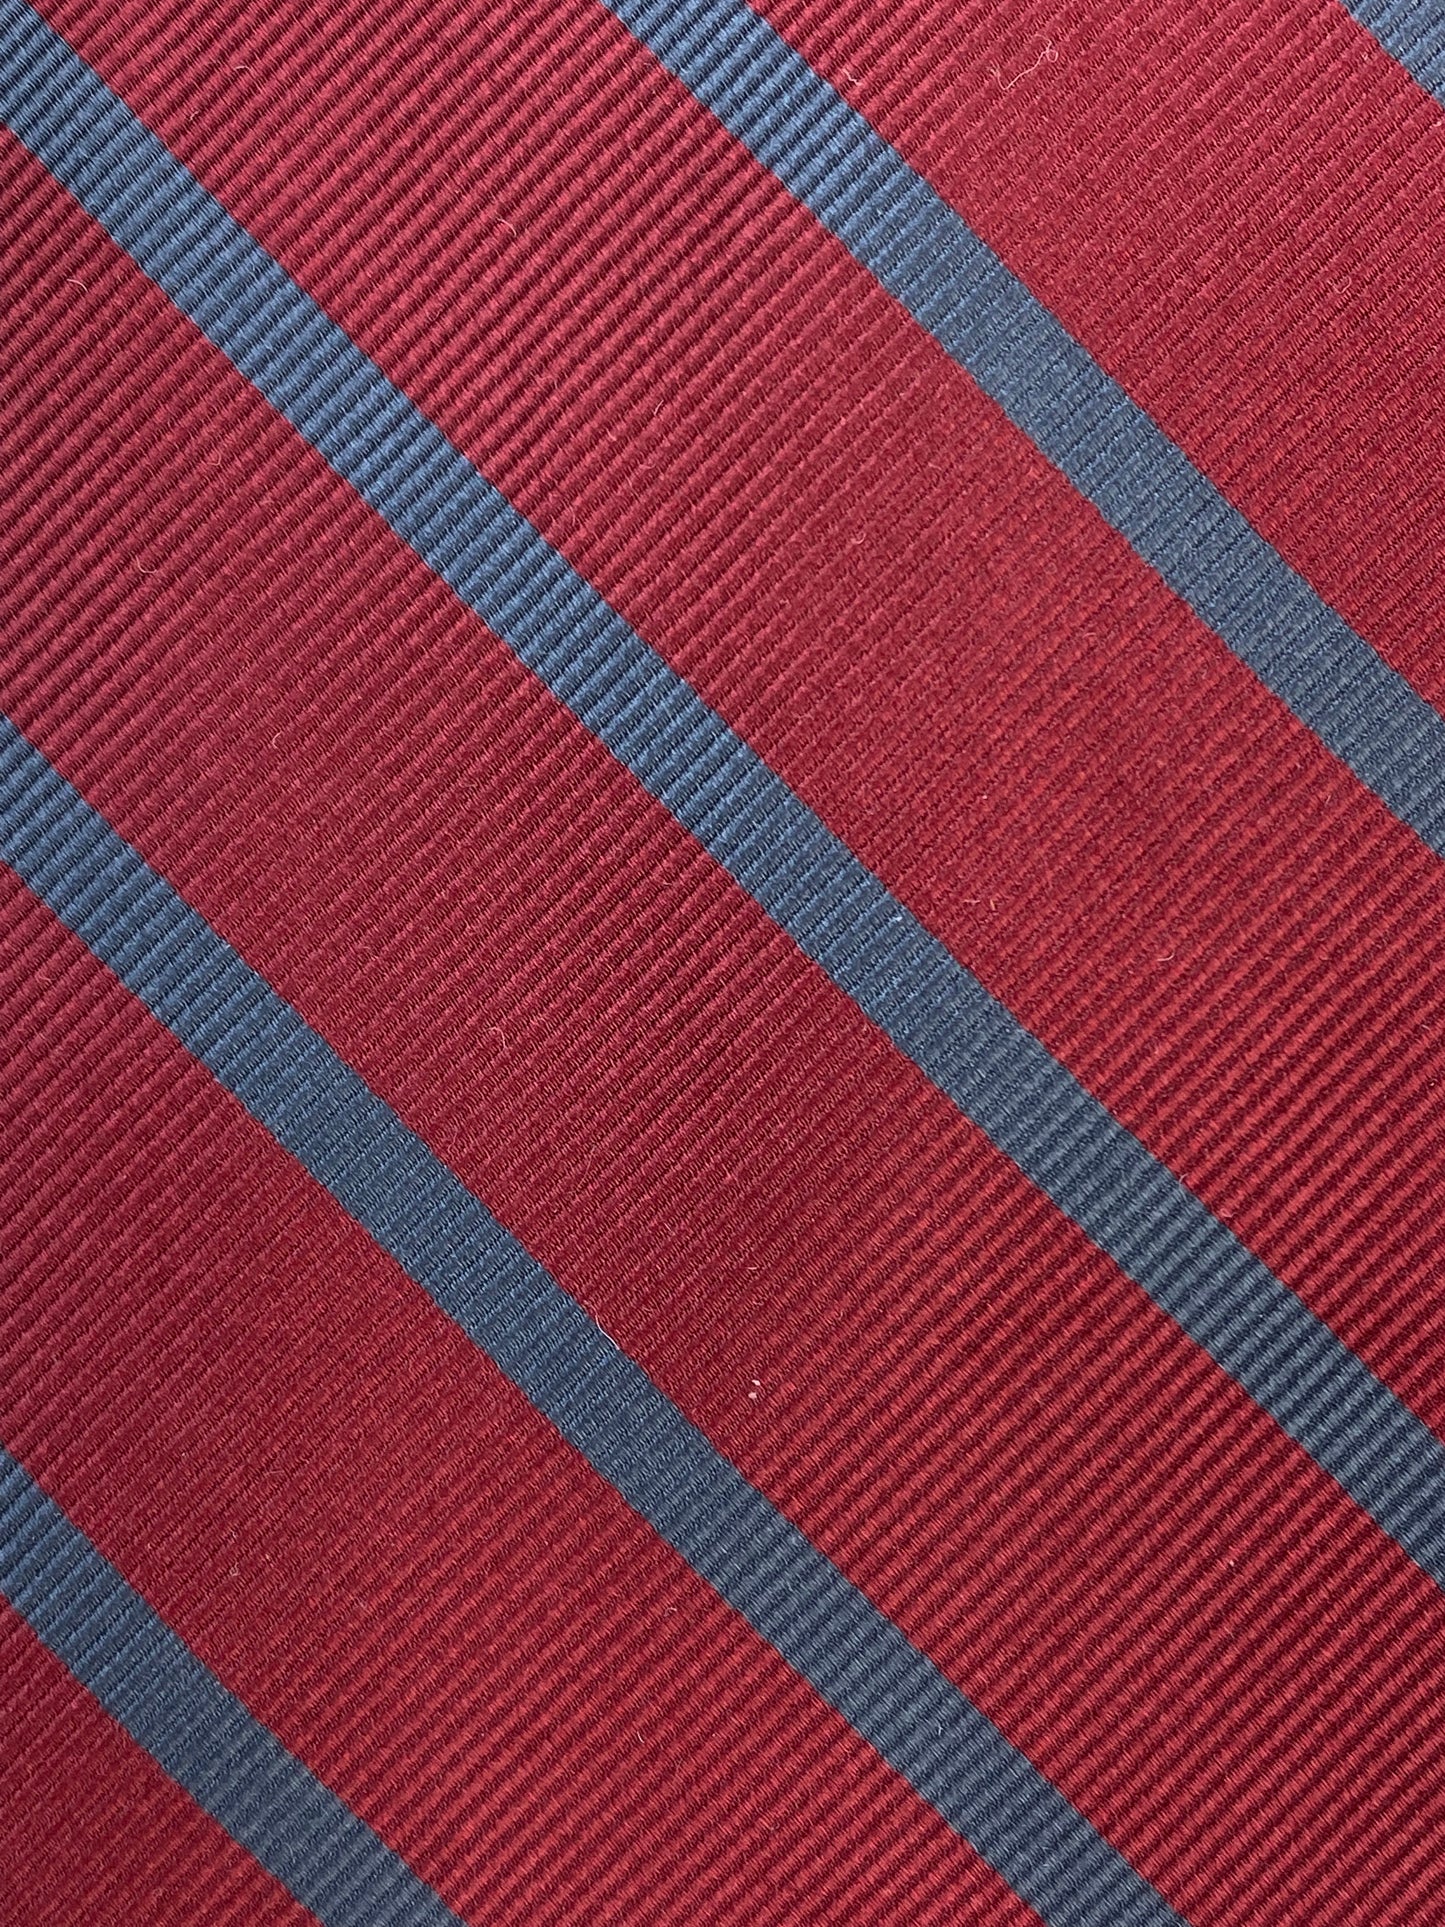 90s Deadstock Silk Necktie, Vintage Wine/ Grey Diagonal Stripe Tie, NOS